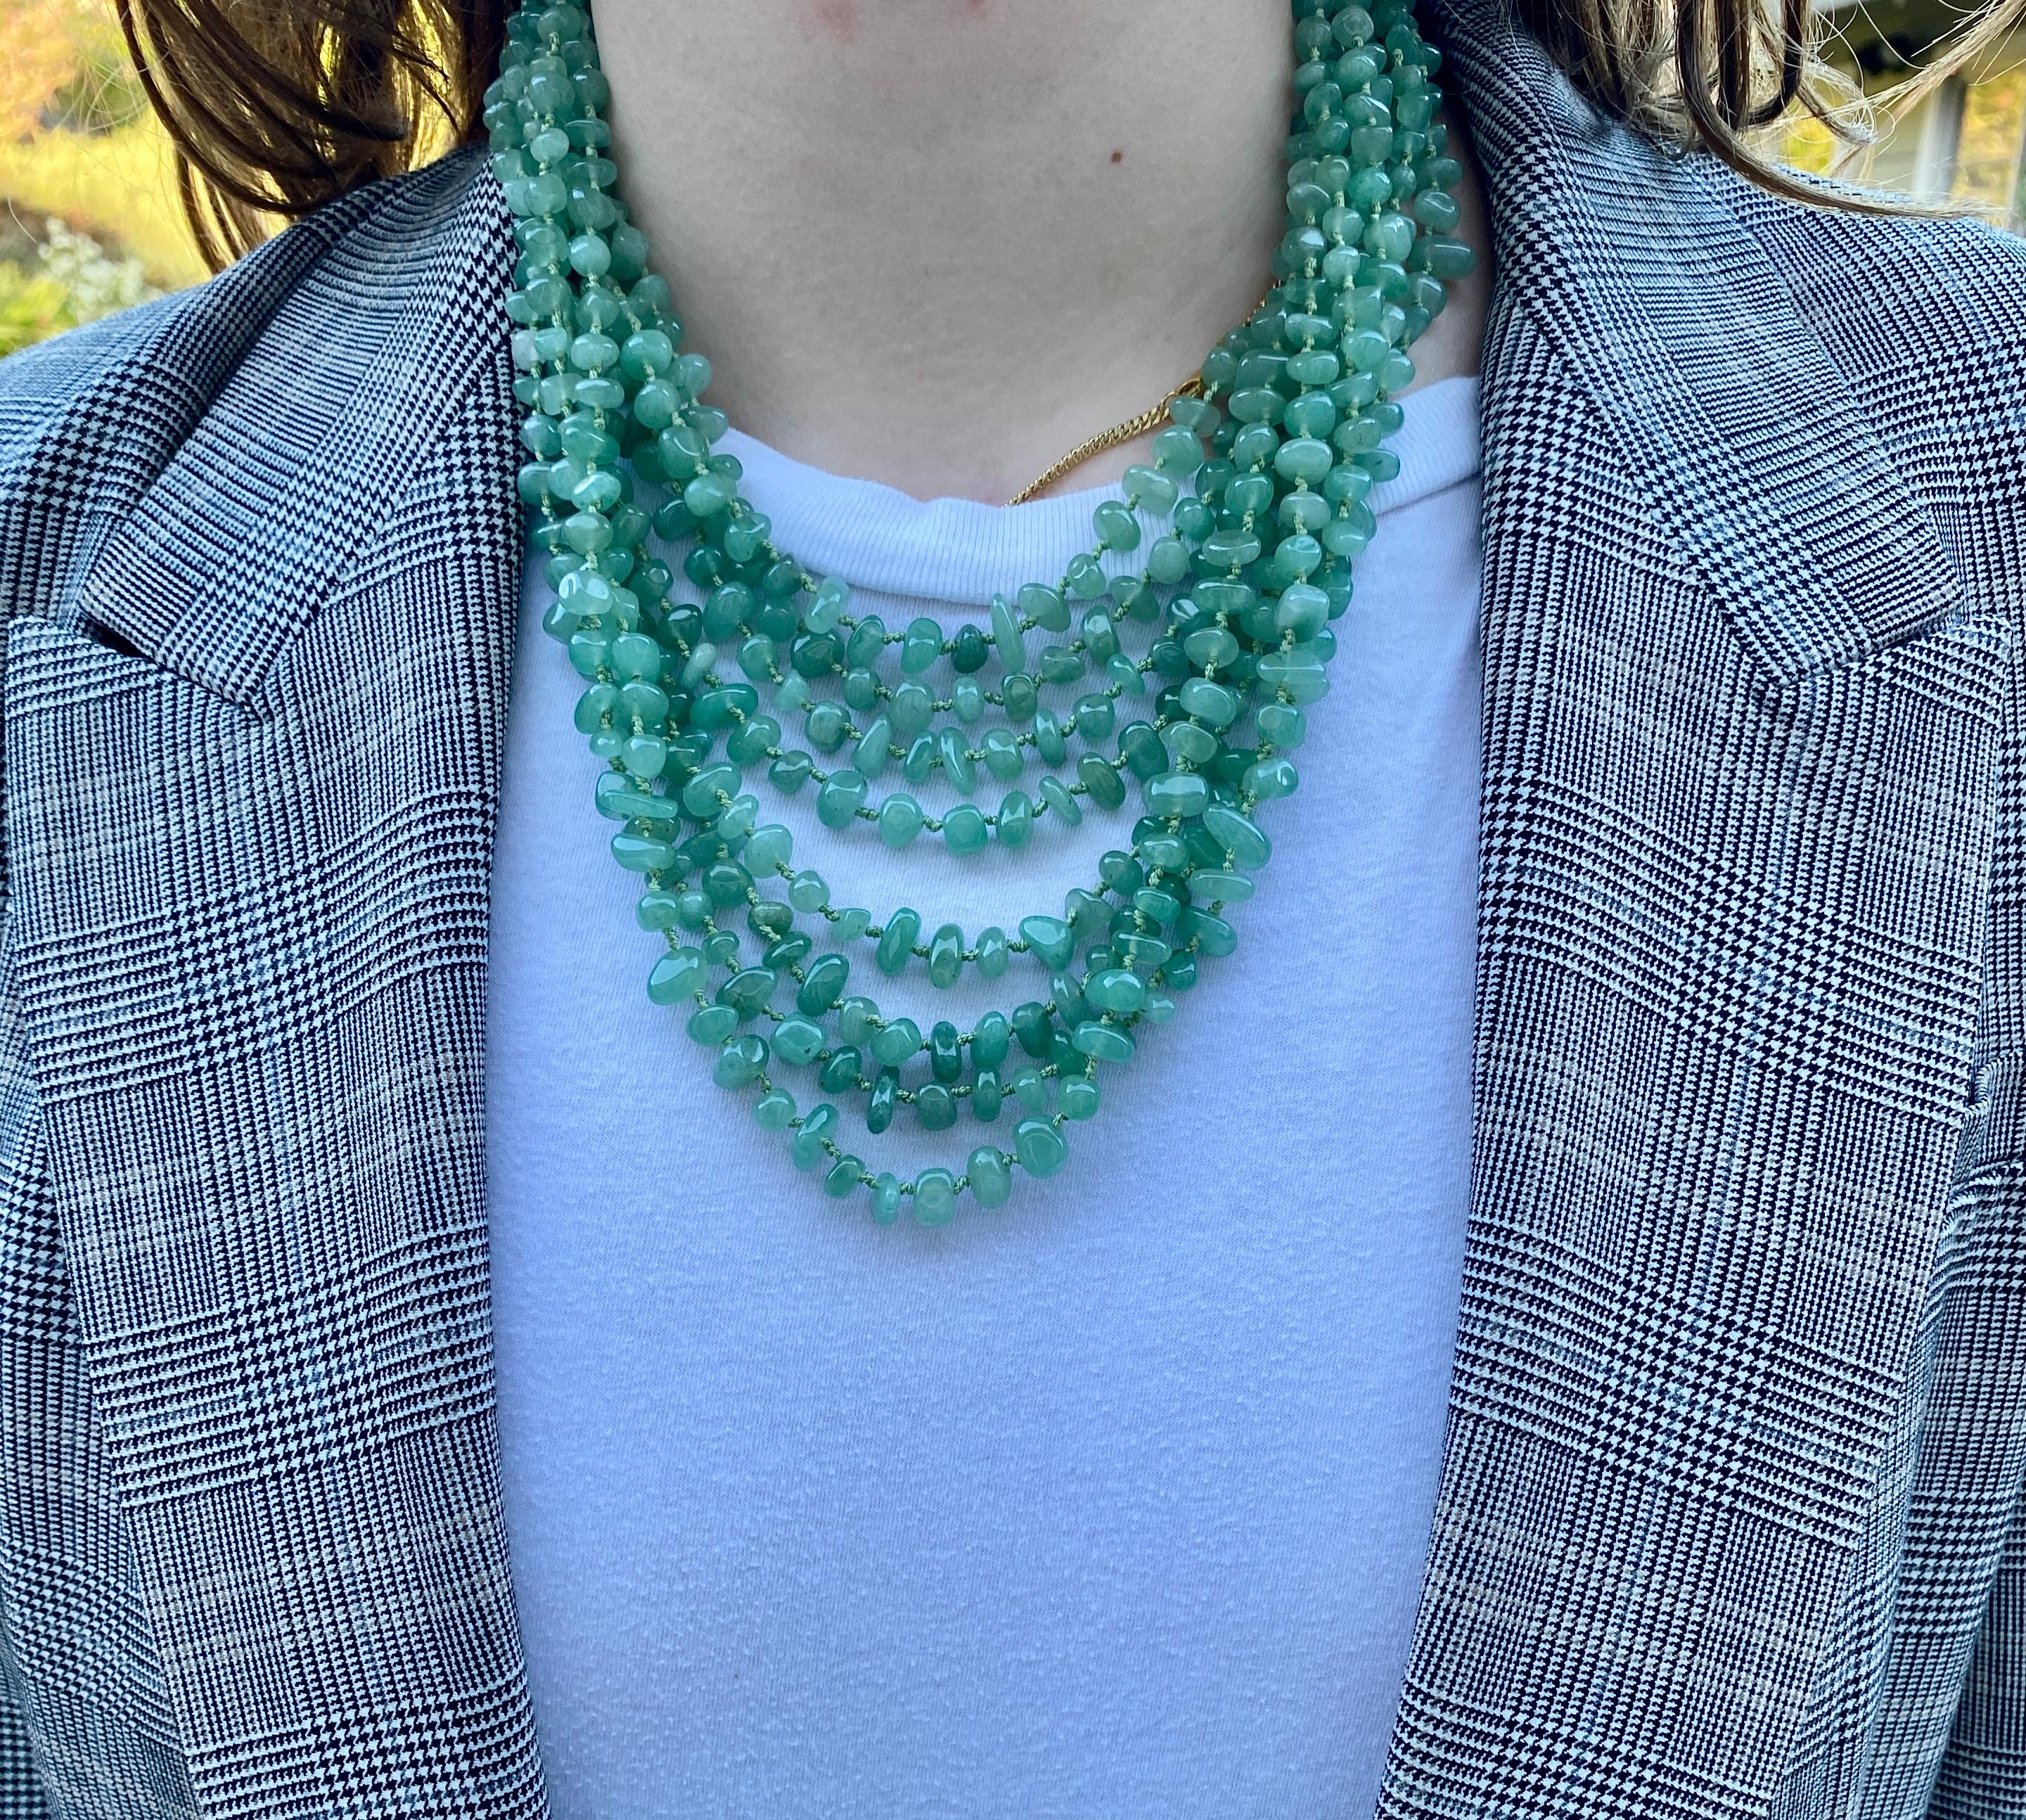 Eine dramatische, achtsträngige Halskette mit zeladongrünen Aventurin-Perlen, die einzeln auf grünem Seidenfaden mit einem Aventurin-Verschluss geknüpft sind.

Die acht abgestuften Stränge variieren in der Länge, wobei der kürzeste etwa 43 cm (17